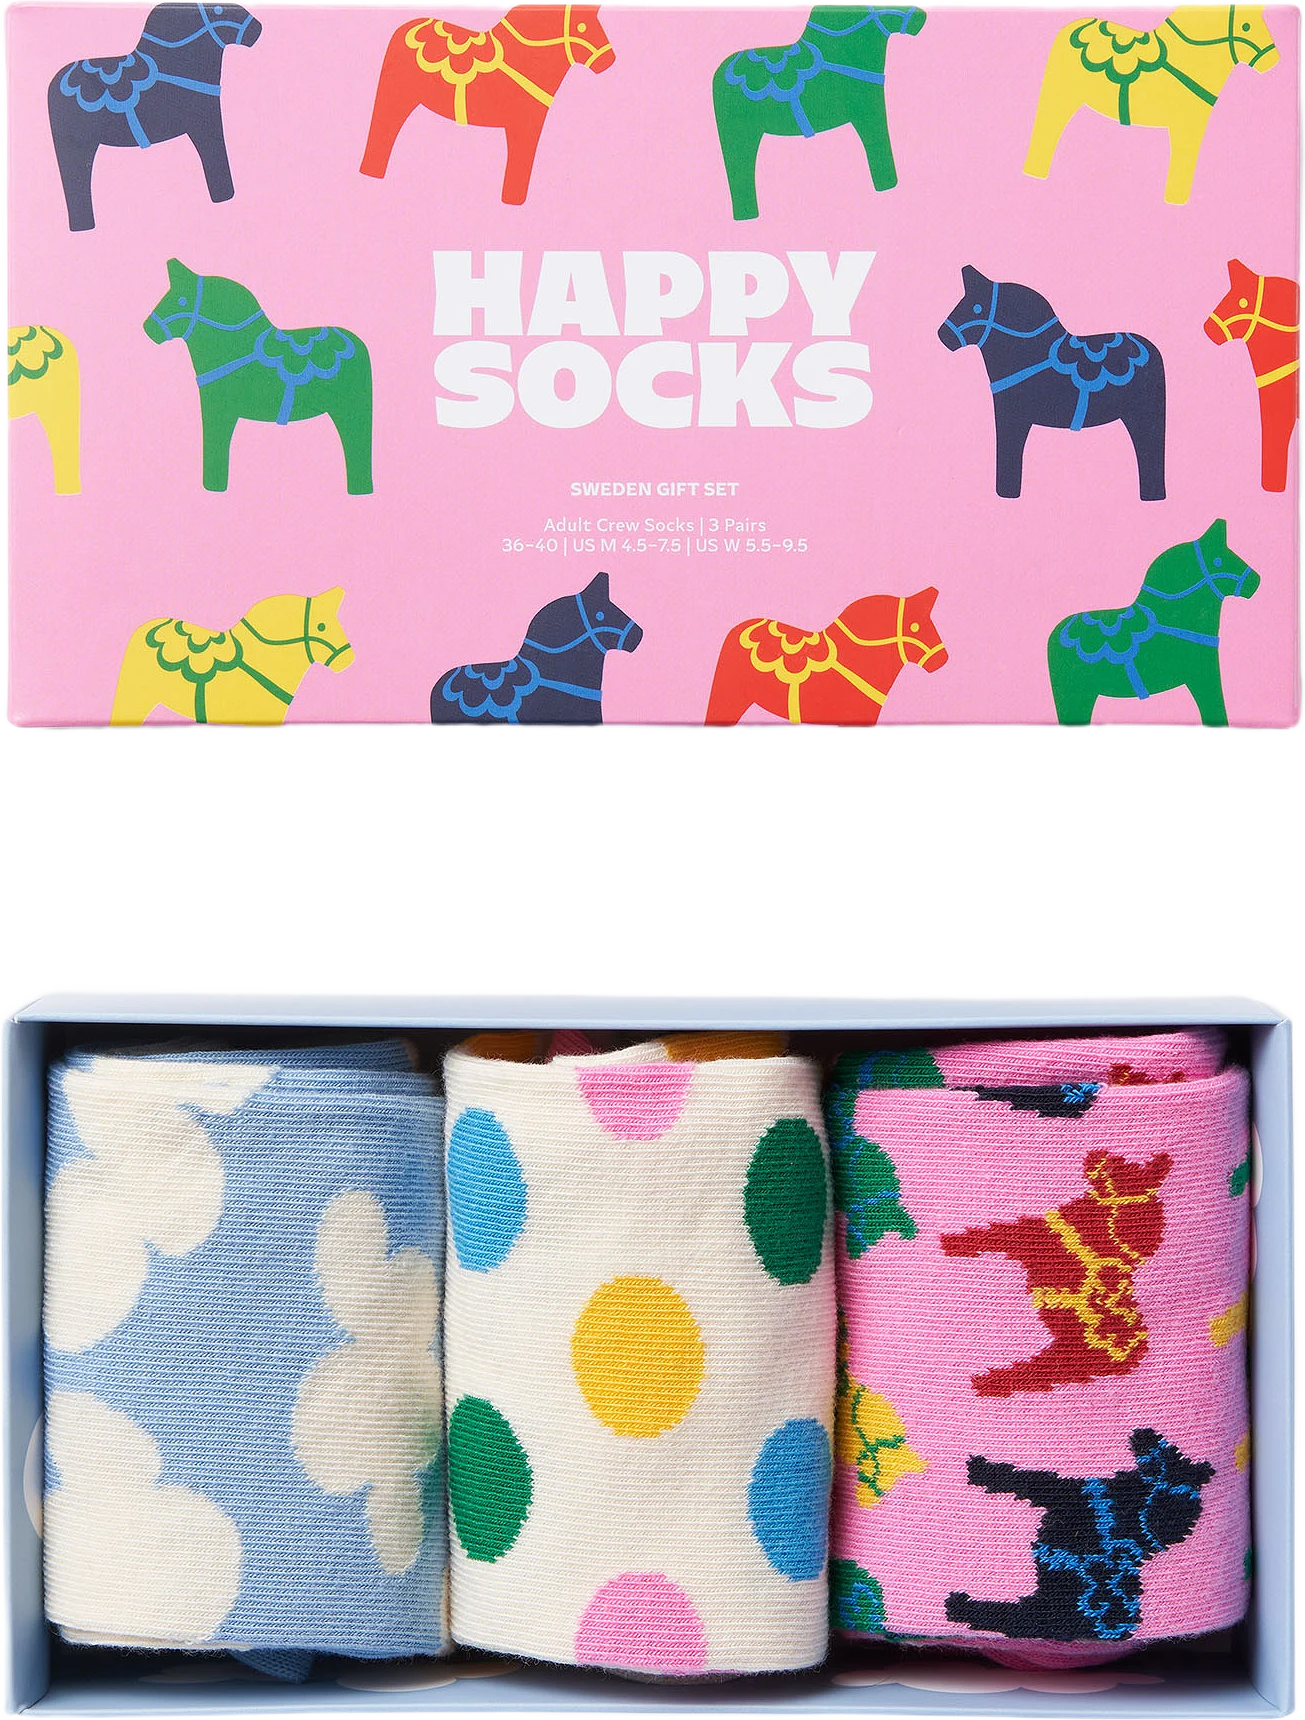 3-Pack Åhlens Socks Gift Set